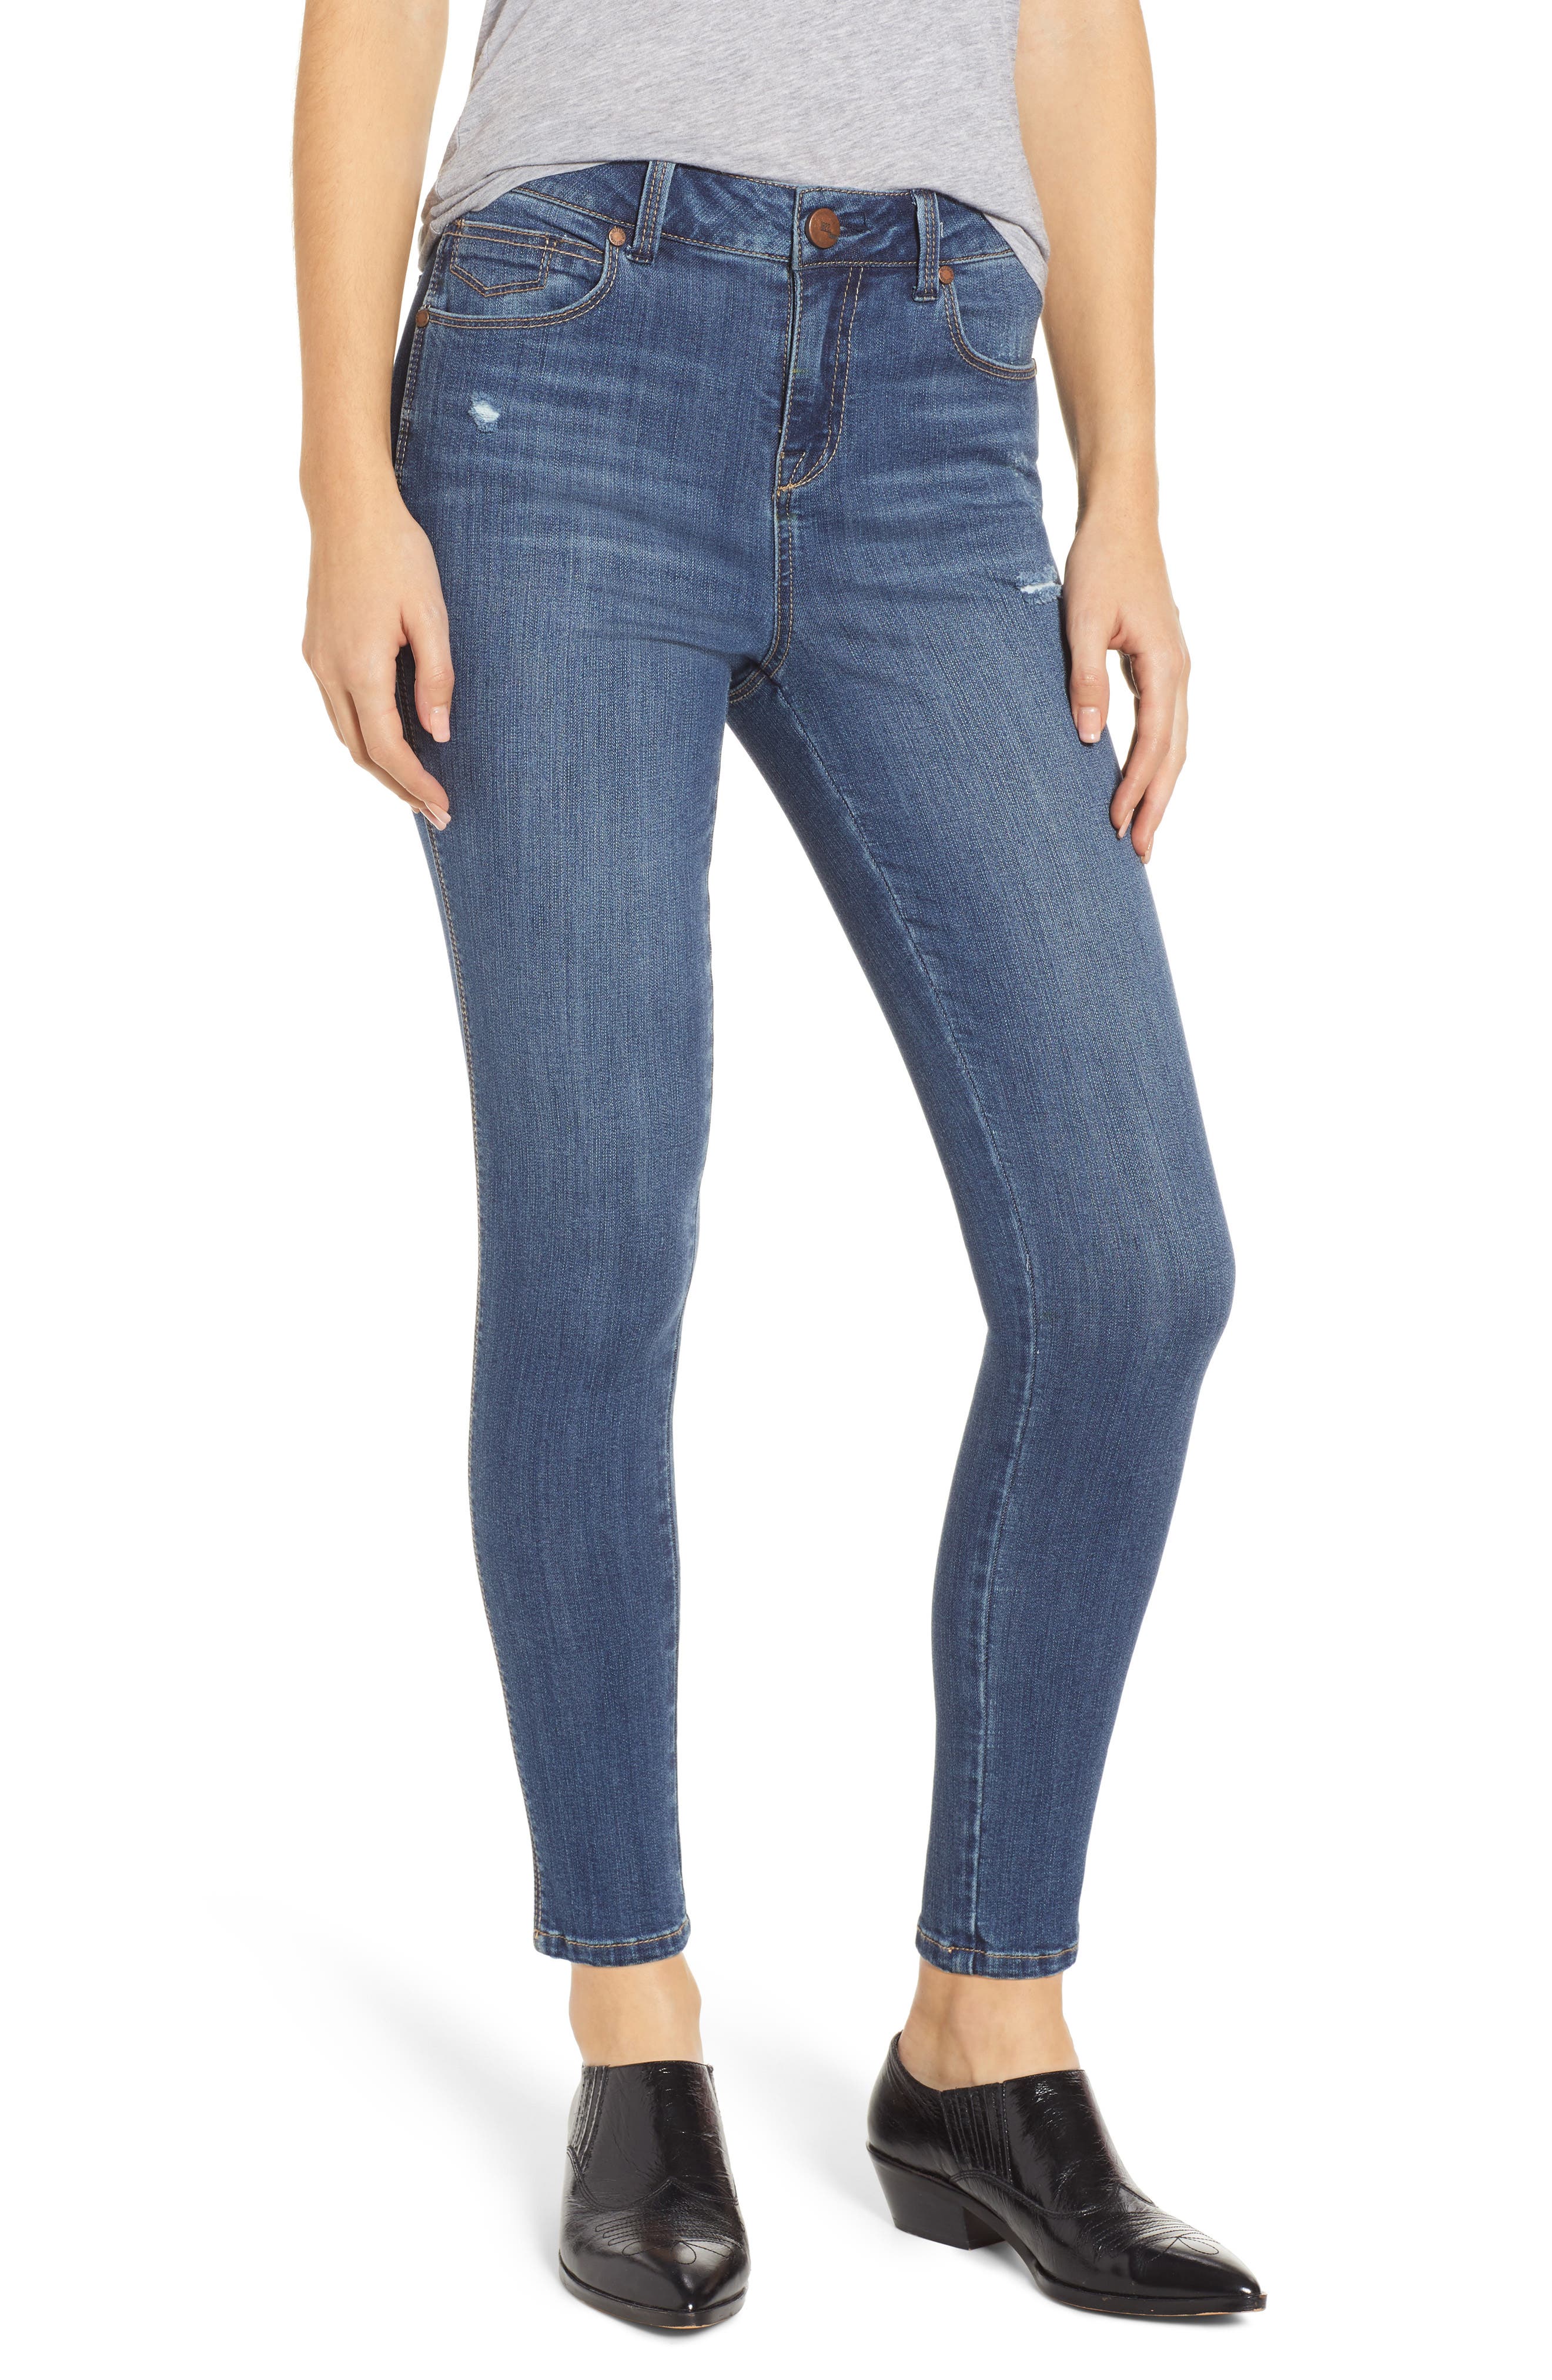 Women's 1822 Denim Jeans